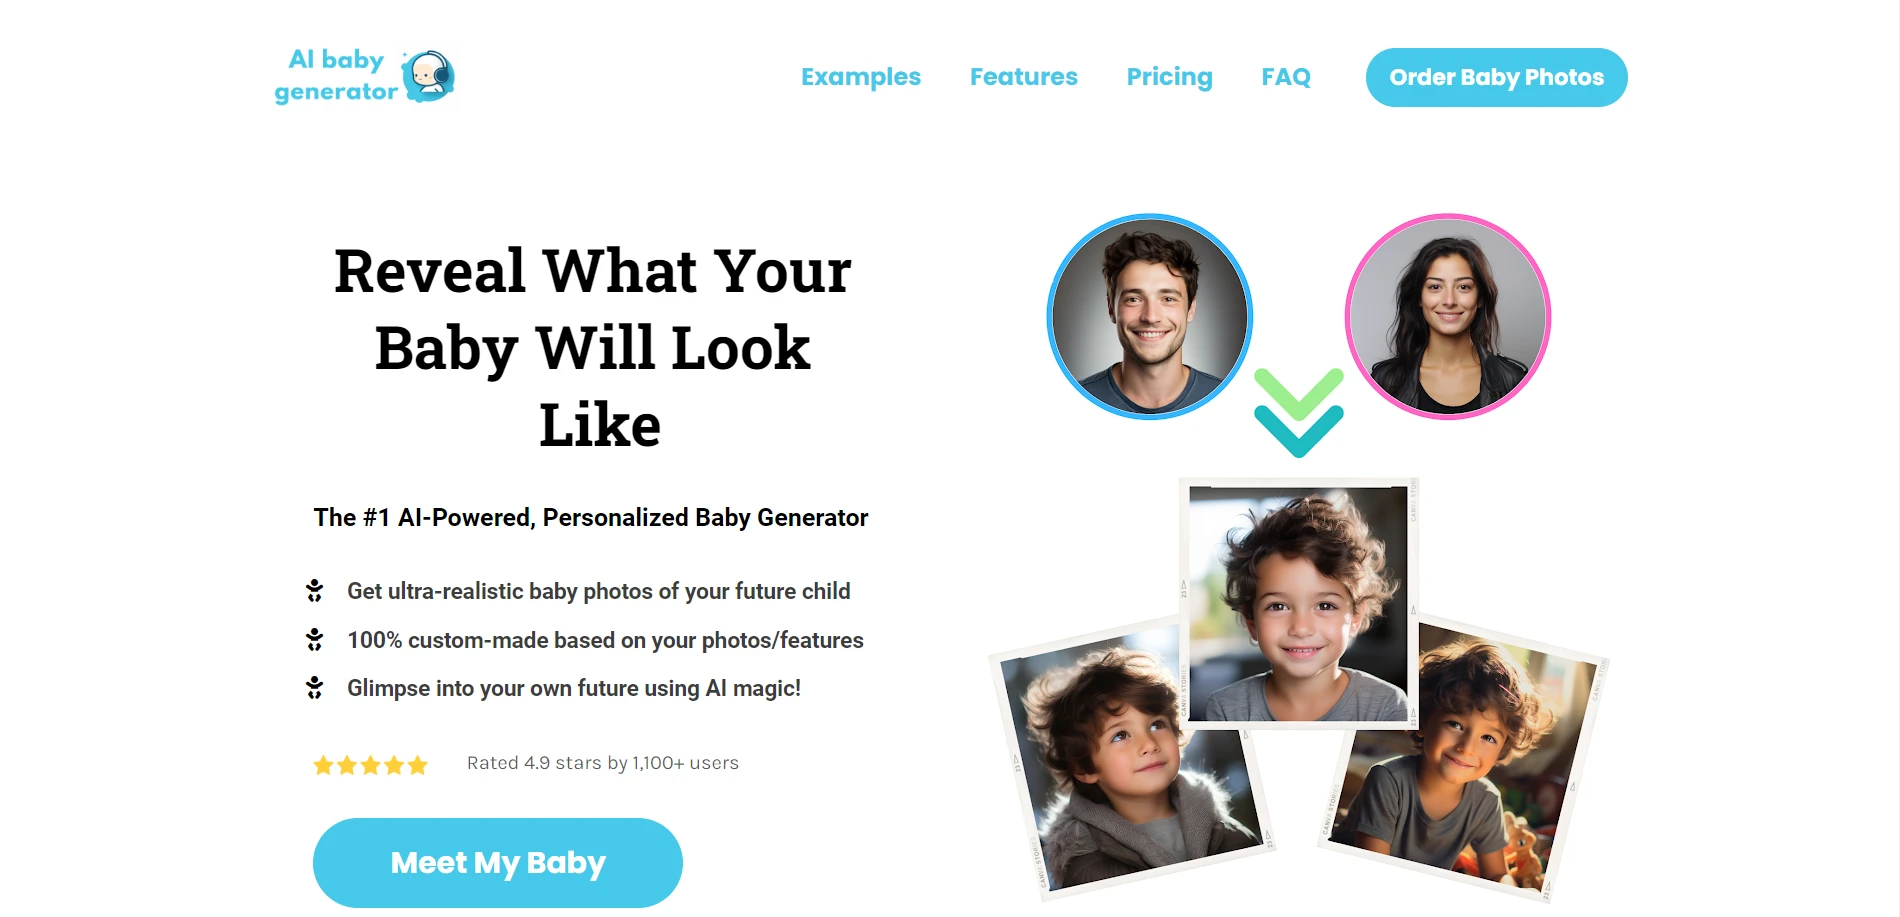 AI Baby Generatorwebsite picture